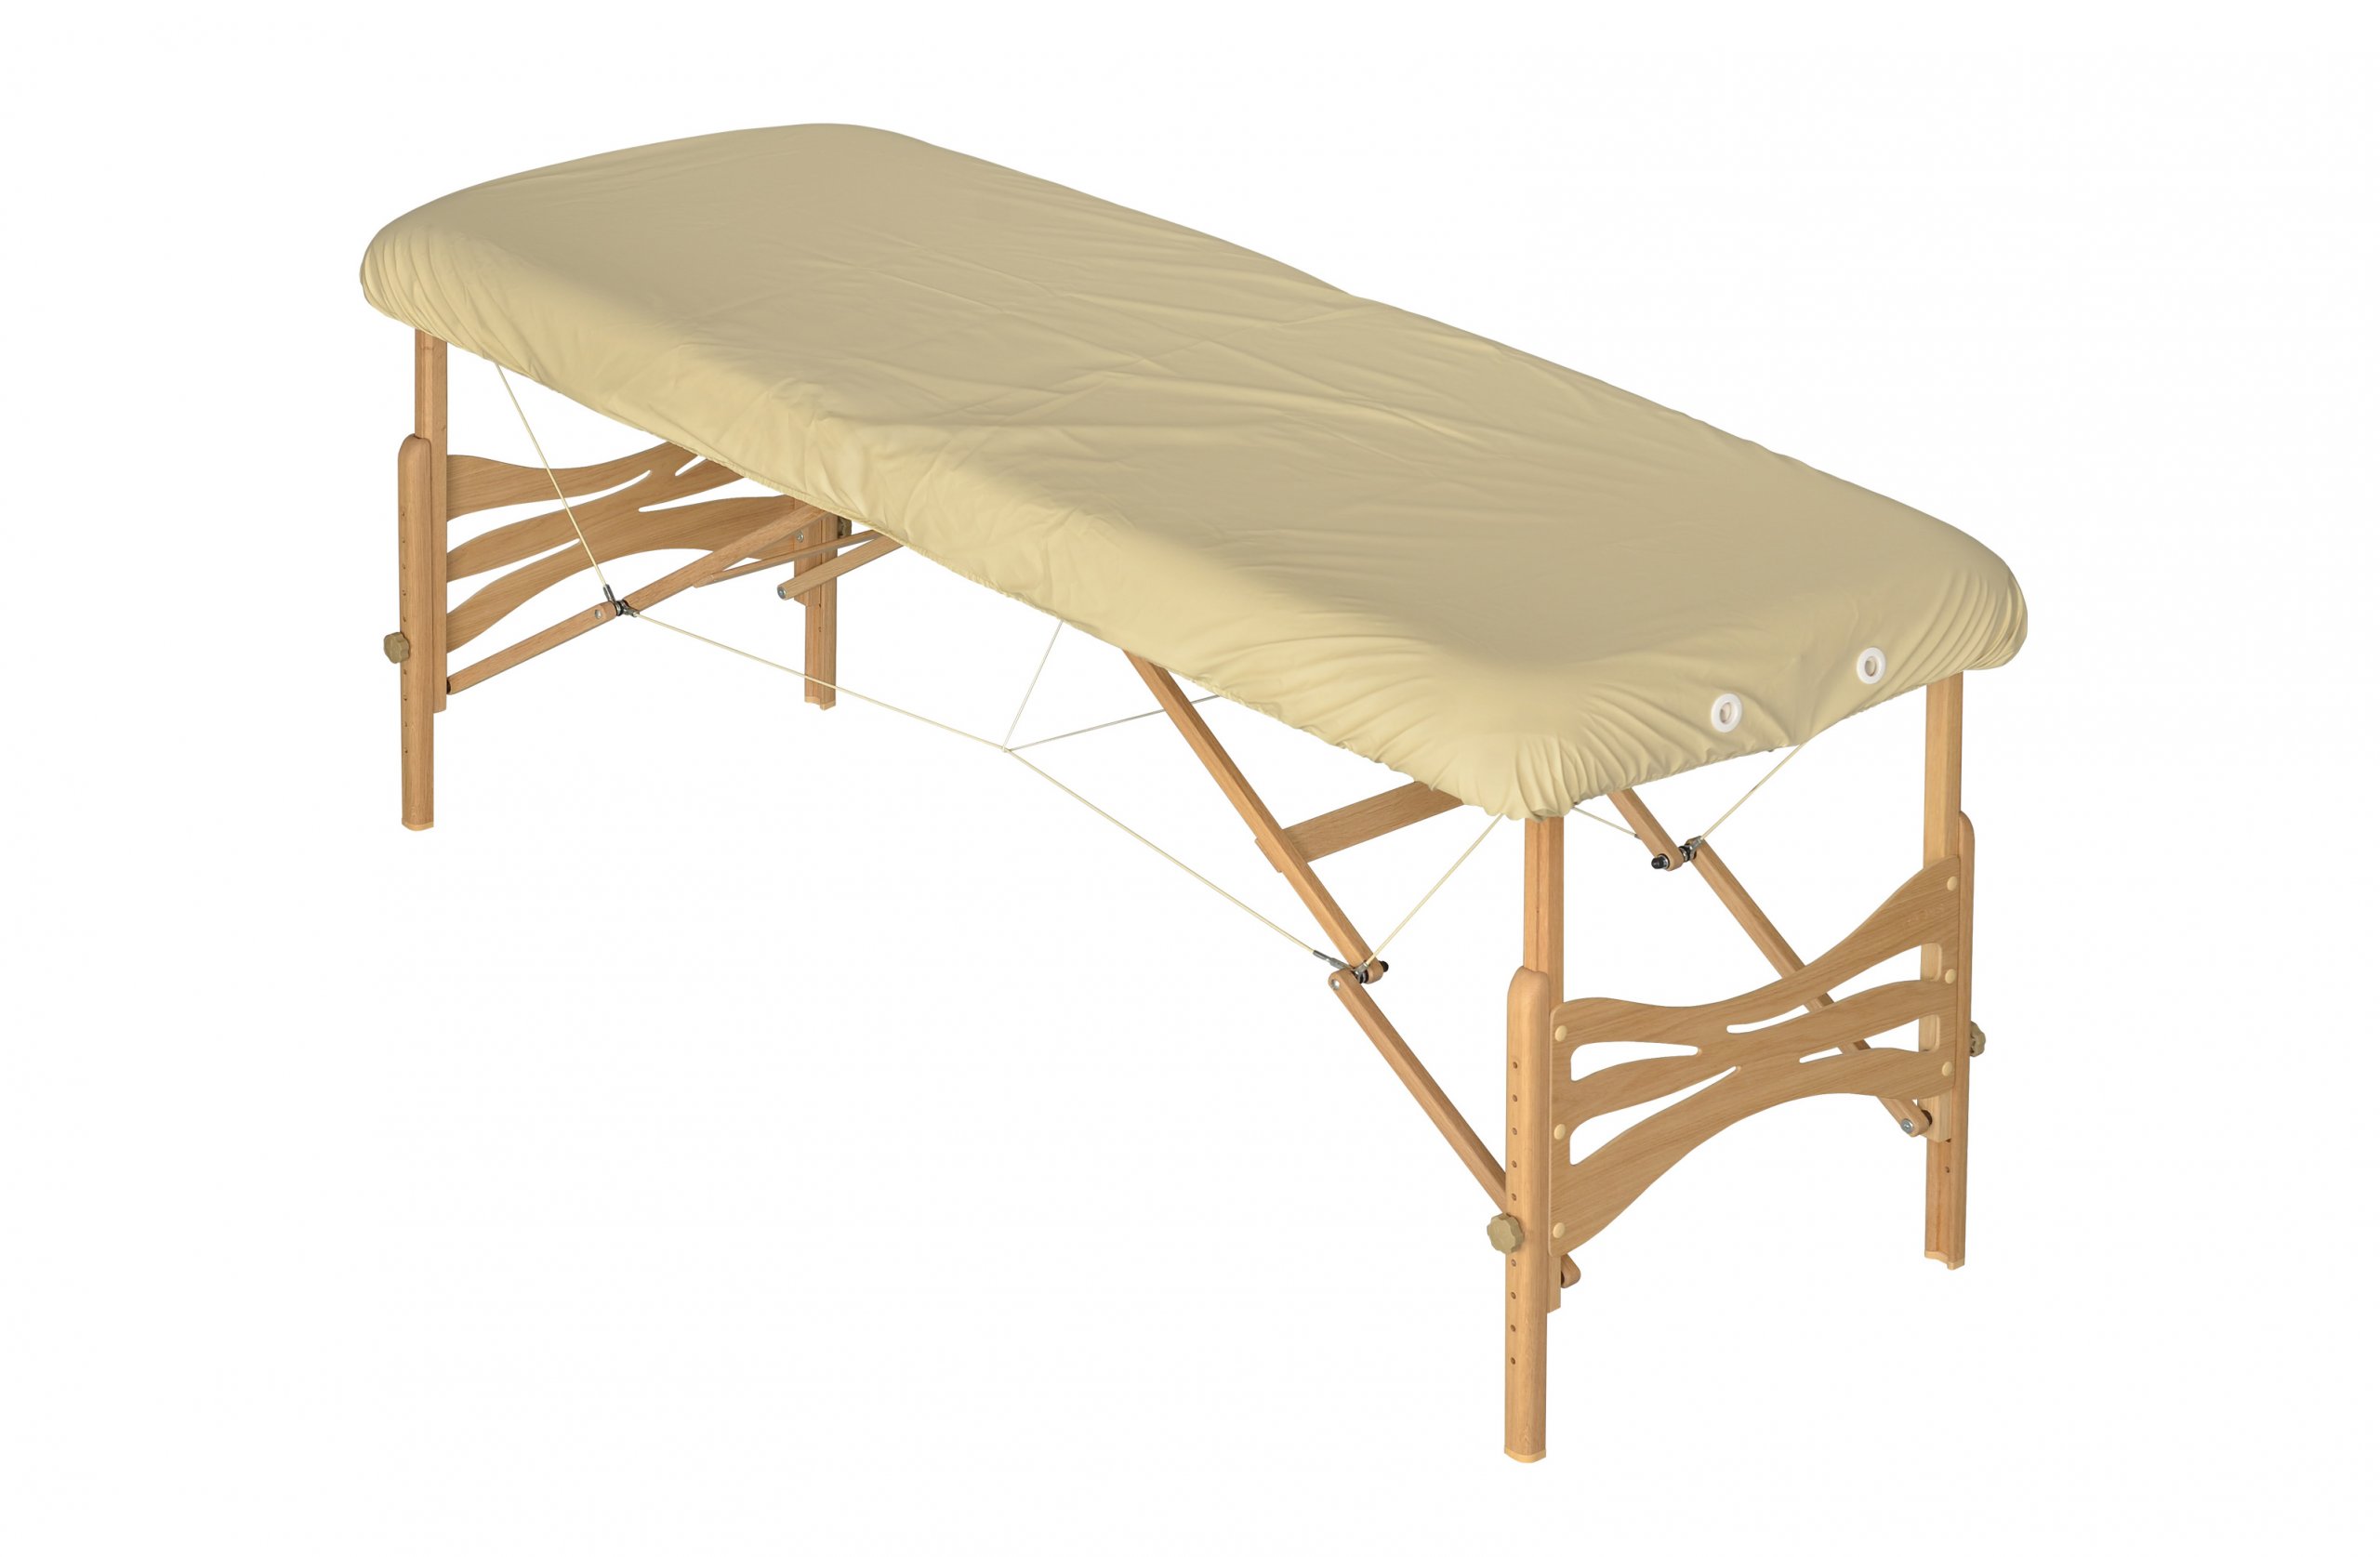 Массажный стол Habys. Стол массажный из бамбука. Массажный стол из бамбука складной. Покрывало на массажный стол. Чехол на массажный стол